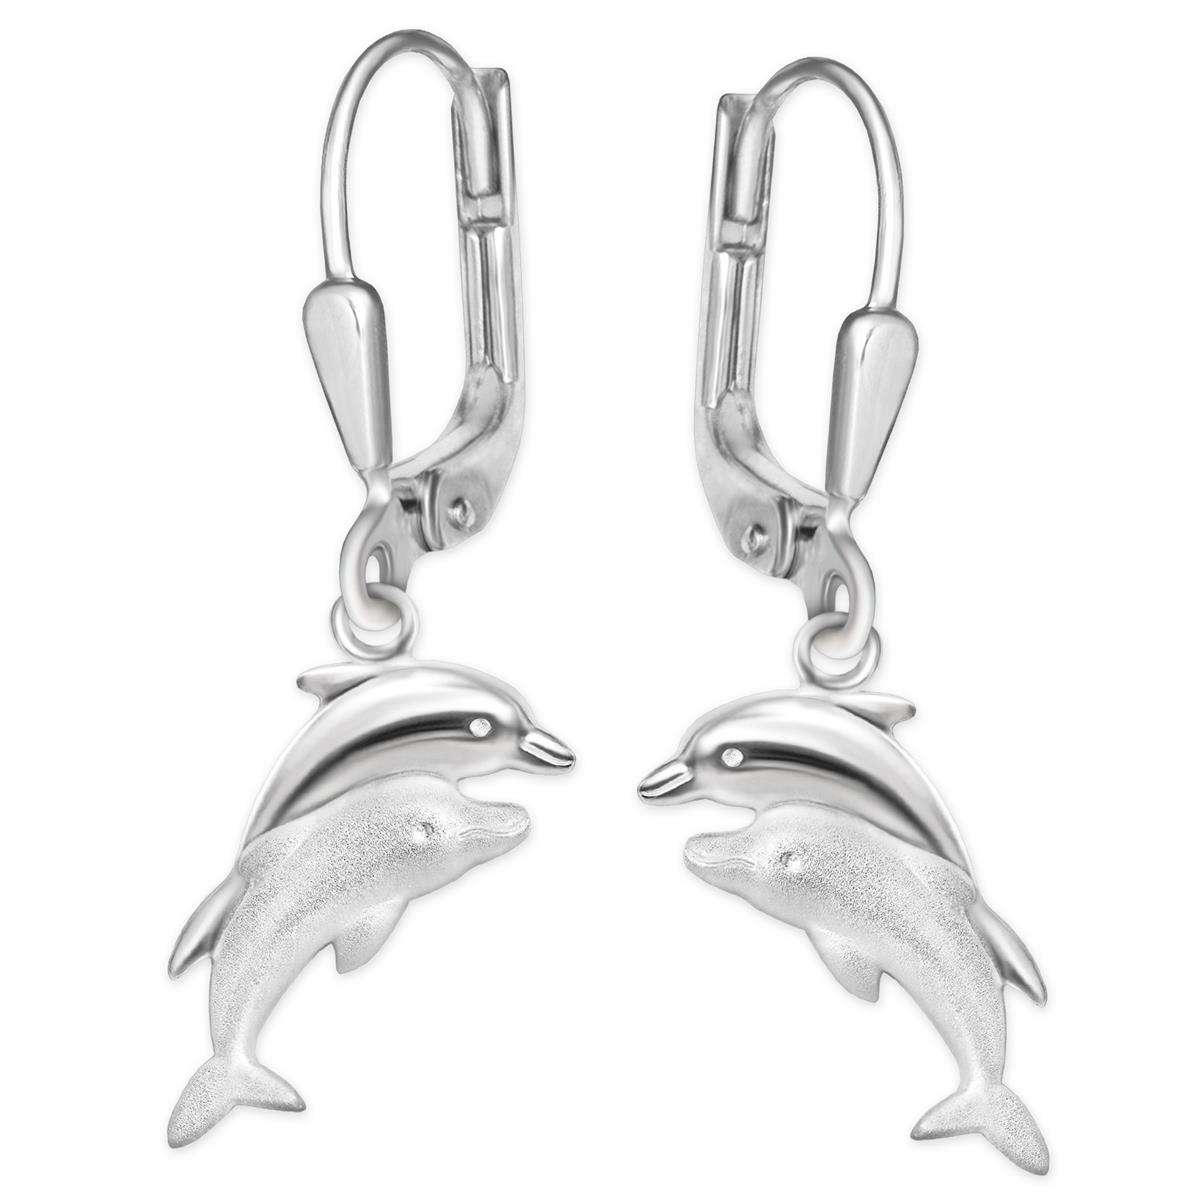 Silberne Ohrhänger 24 mm mit Delfinpaar 11 mm matt und glänzend STERLING SILBER 925